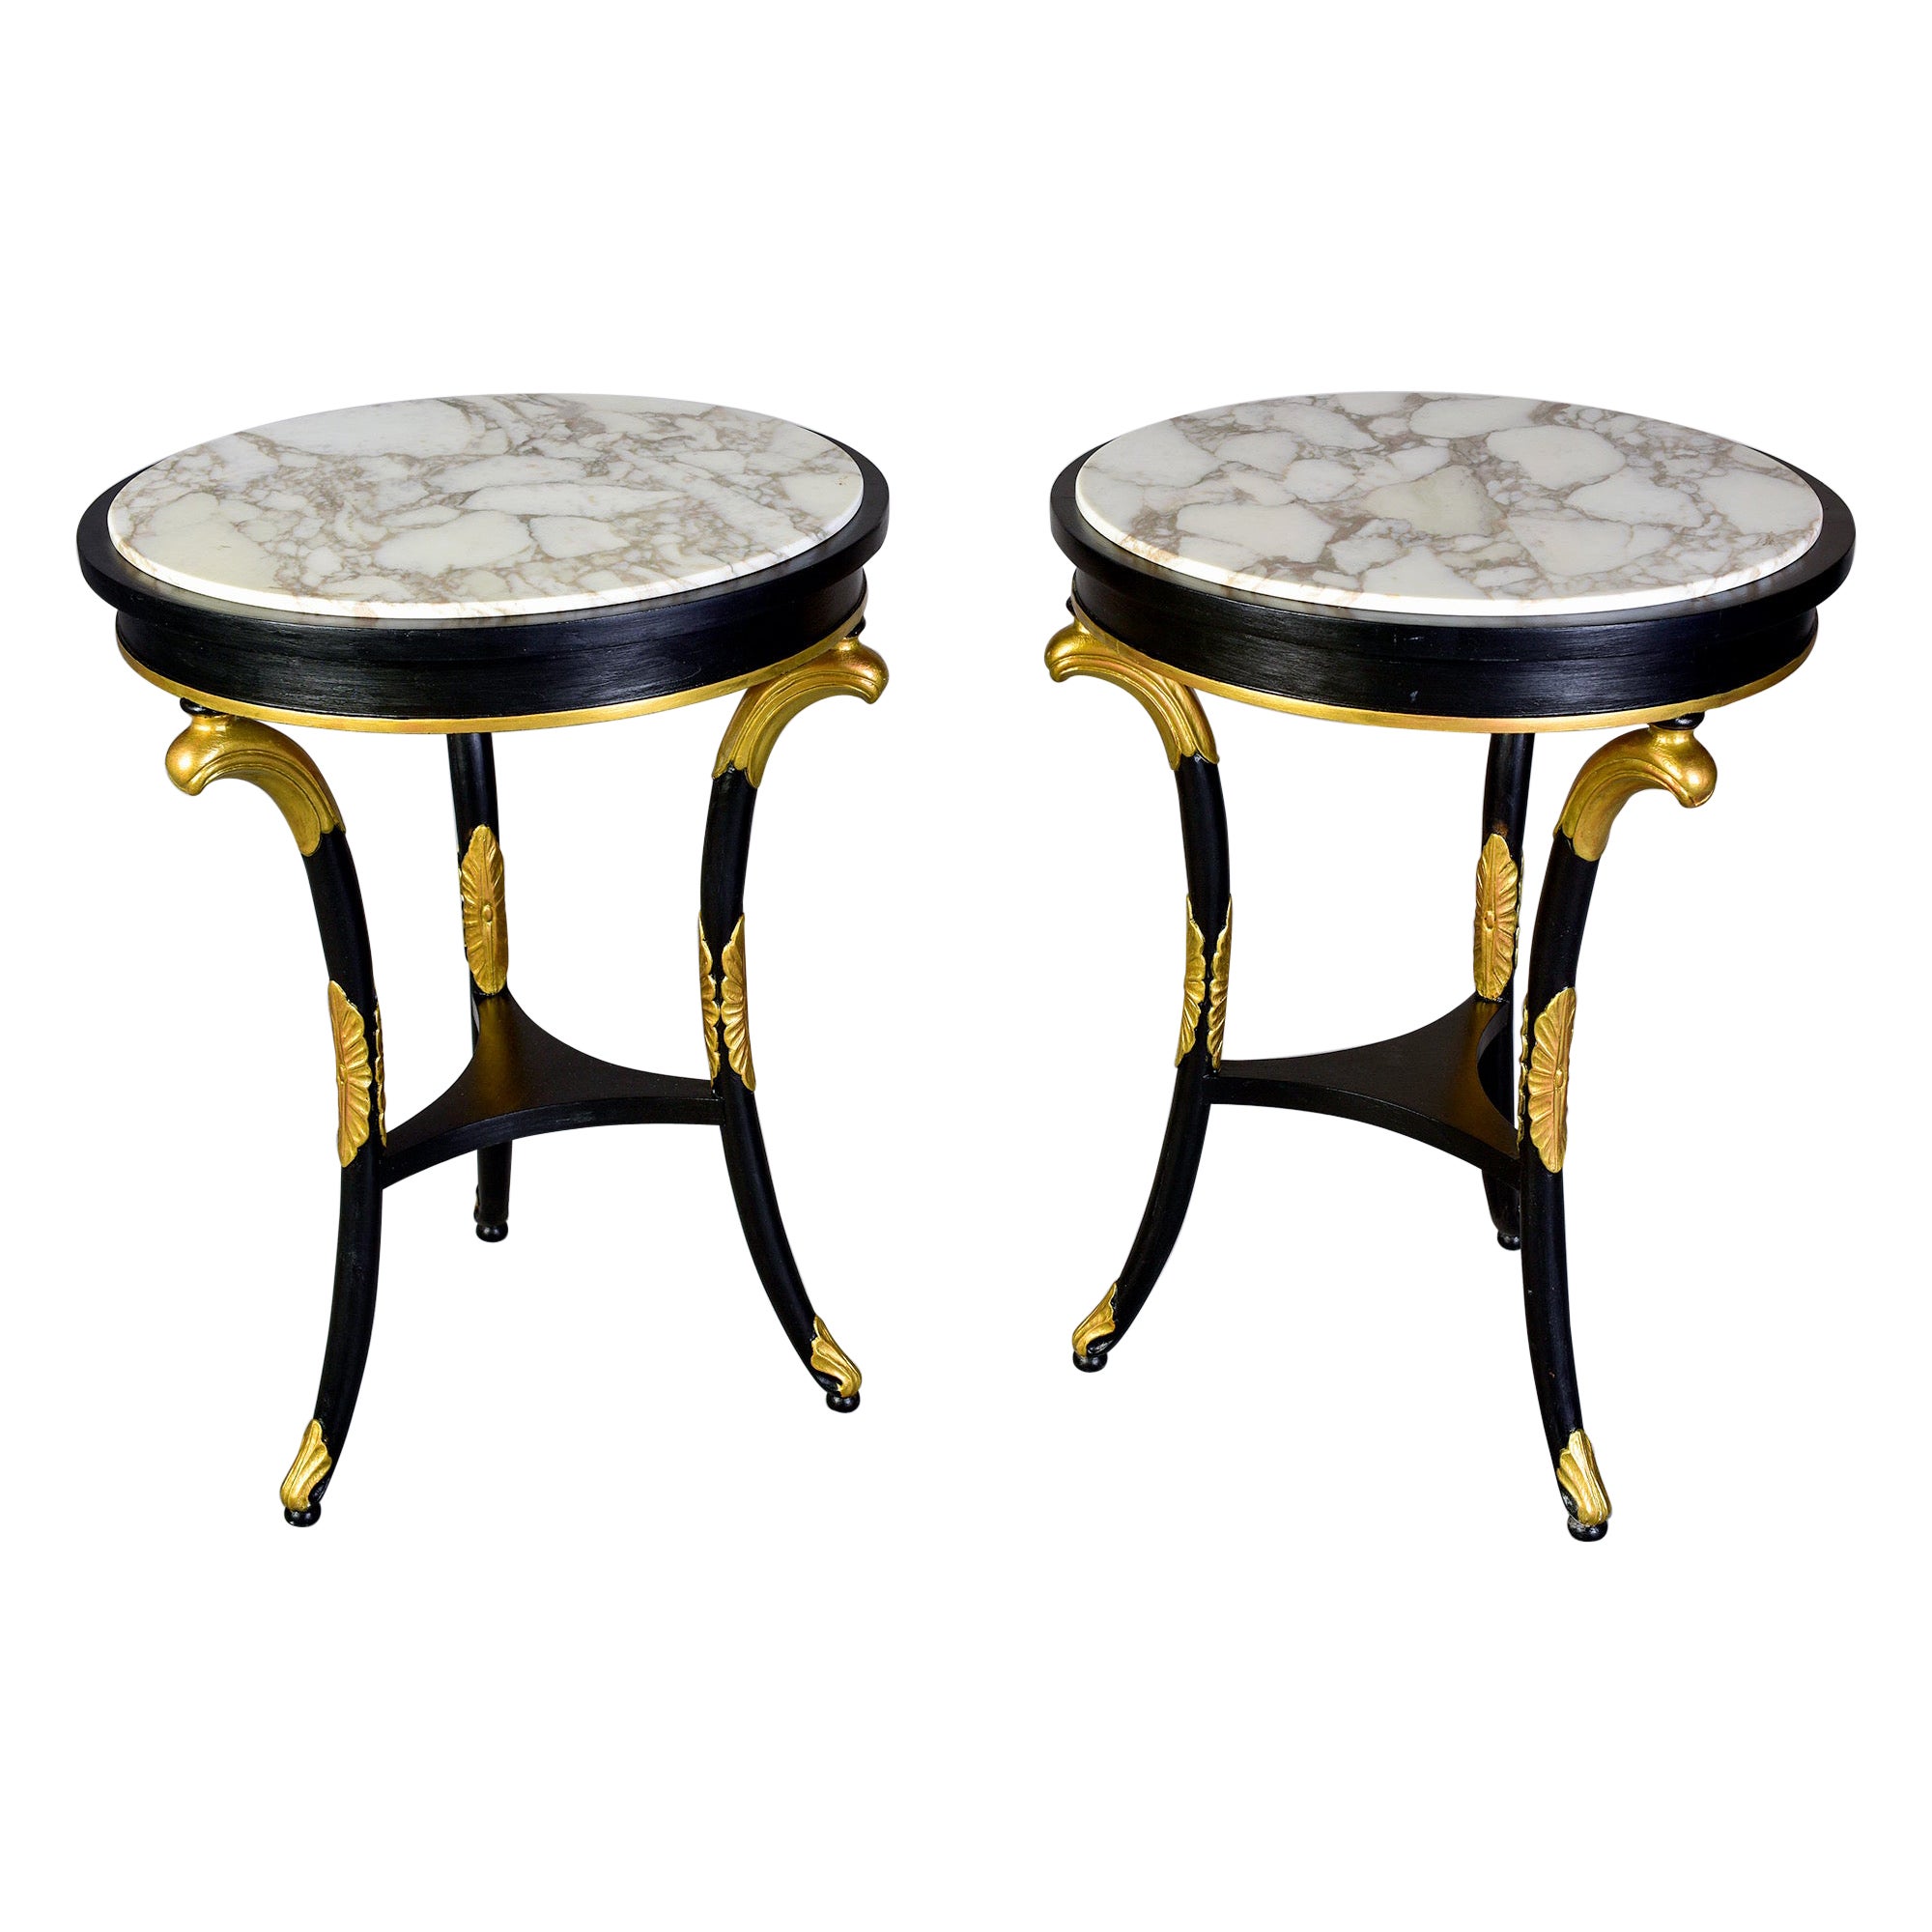 Paar ebonisierte Tische im Regency-Stil des späten 19. Jahrhunderts mit vergoldeten Holzbeschlägen und Marmorplatten